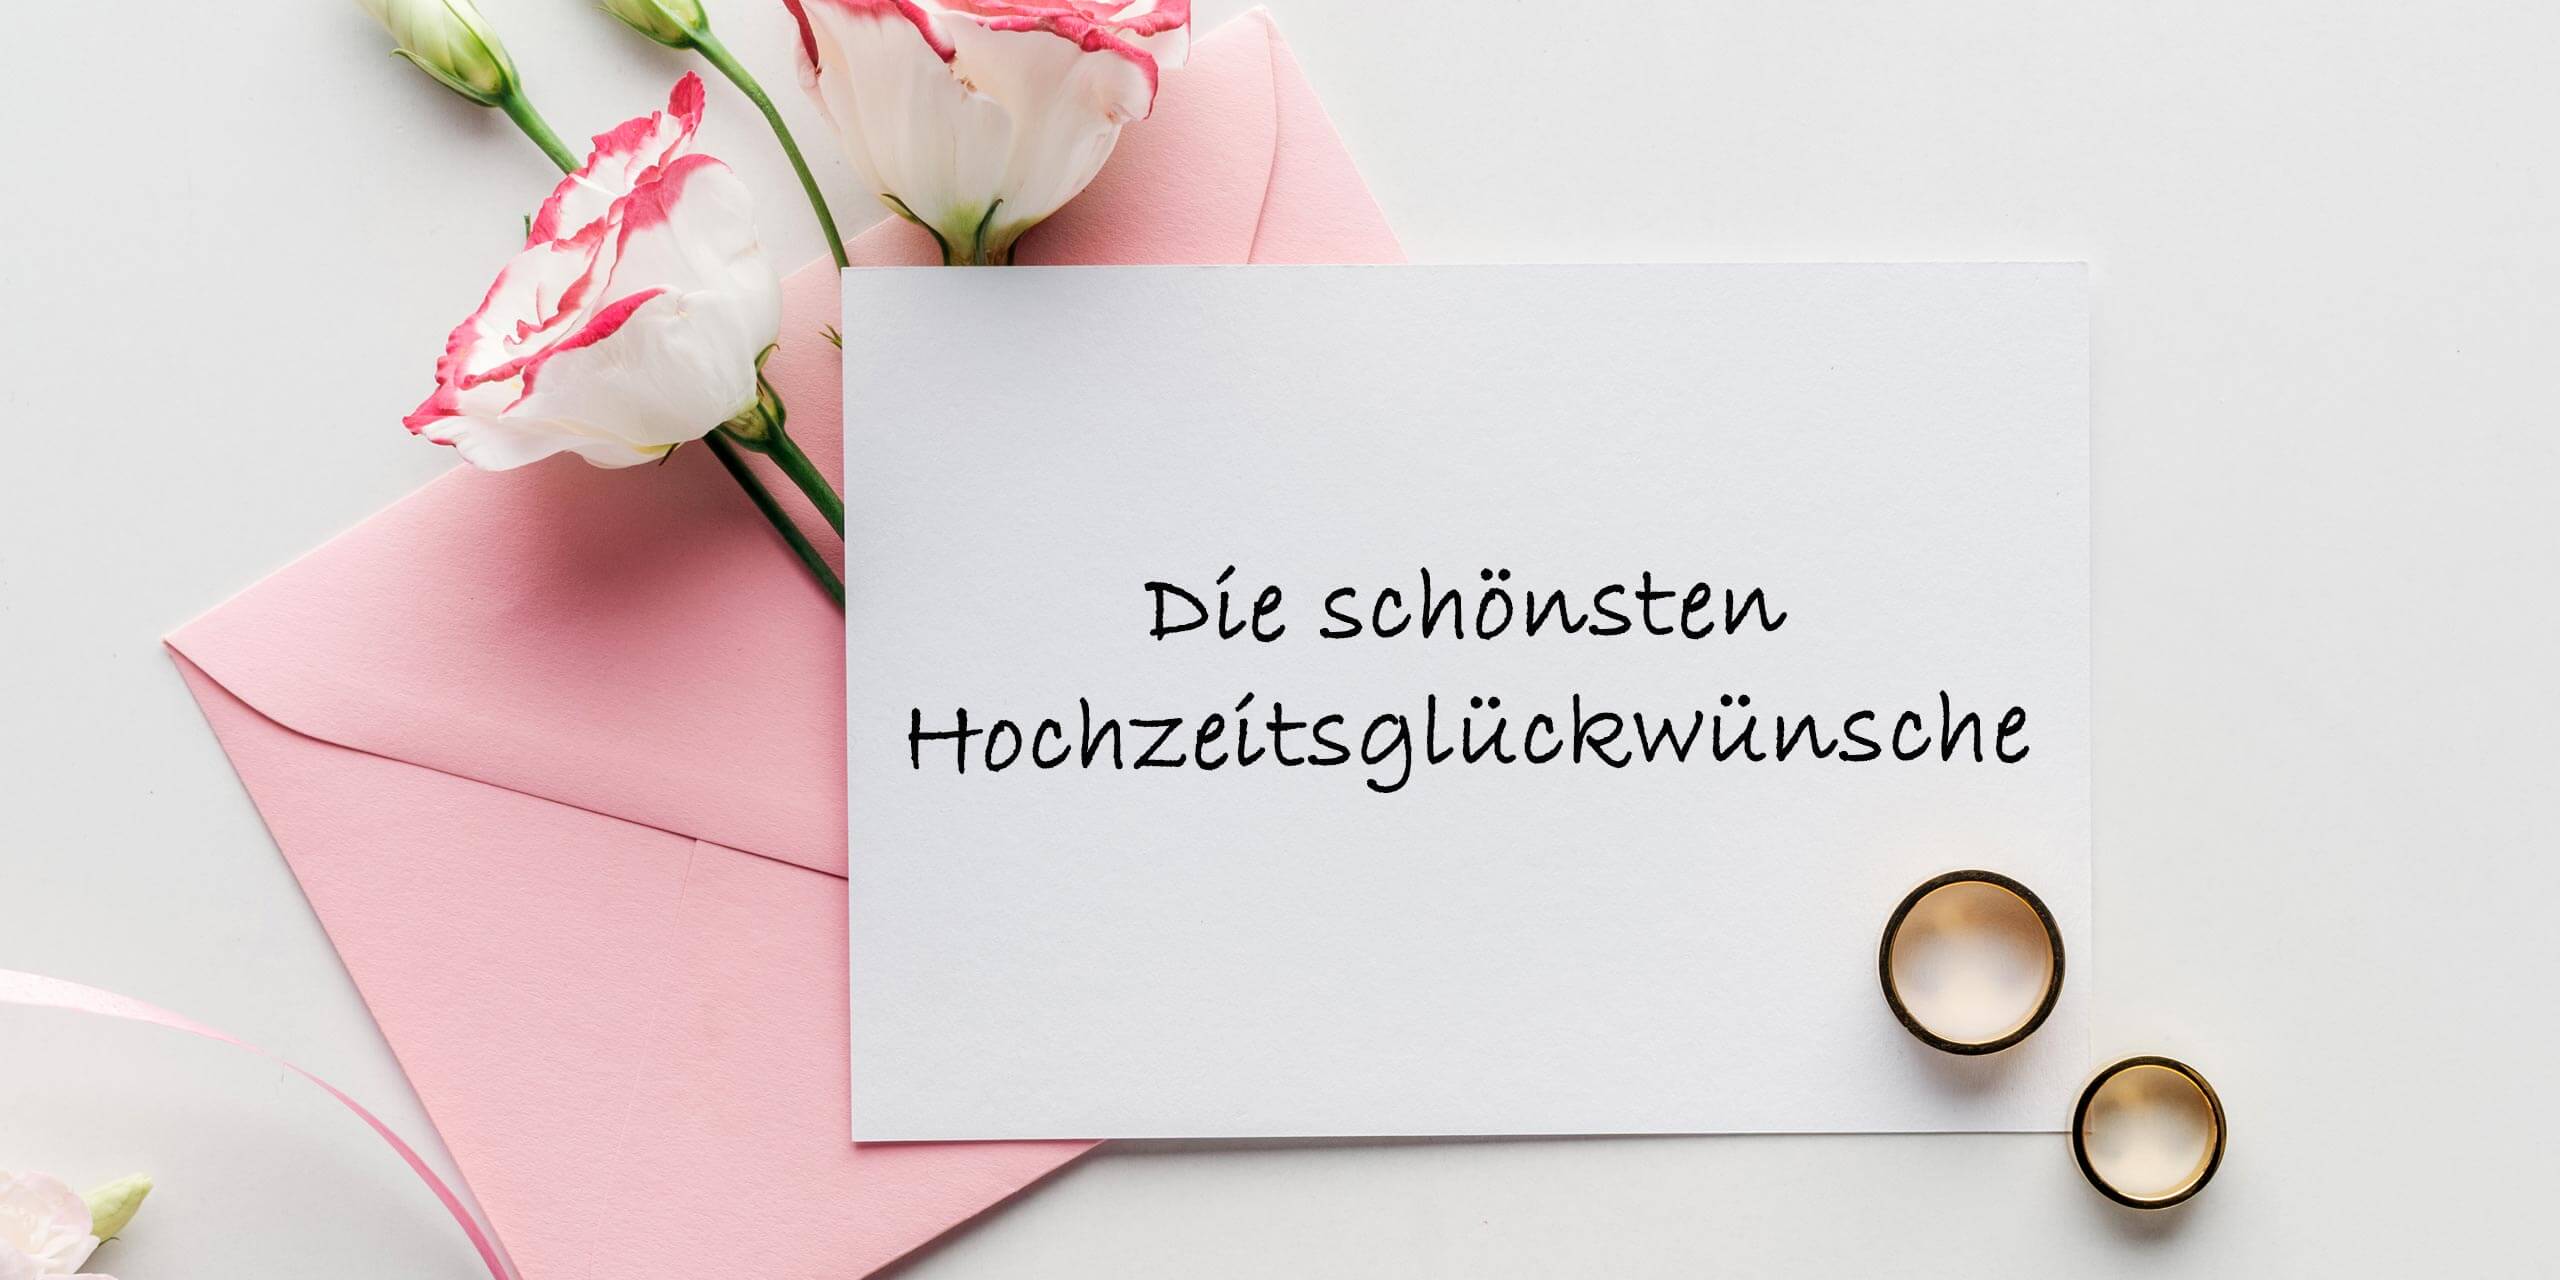 Hochzeitsglückwünsche: Sprüche, Gedichte & Zitate für Hochzeitskarte/Gä...